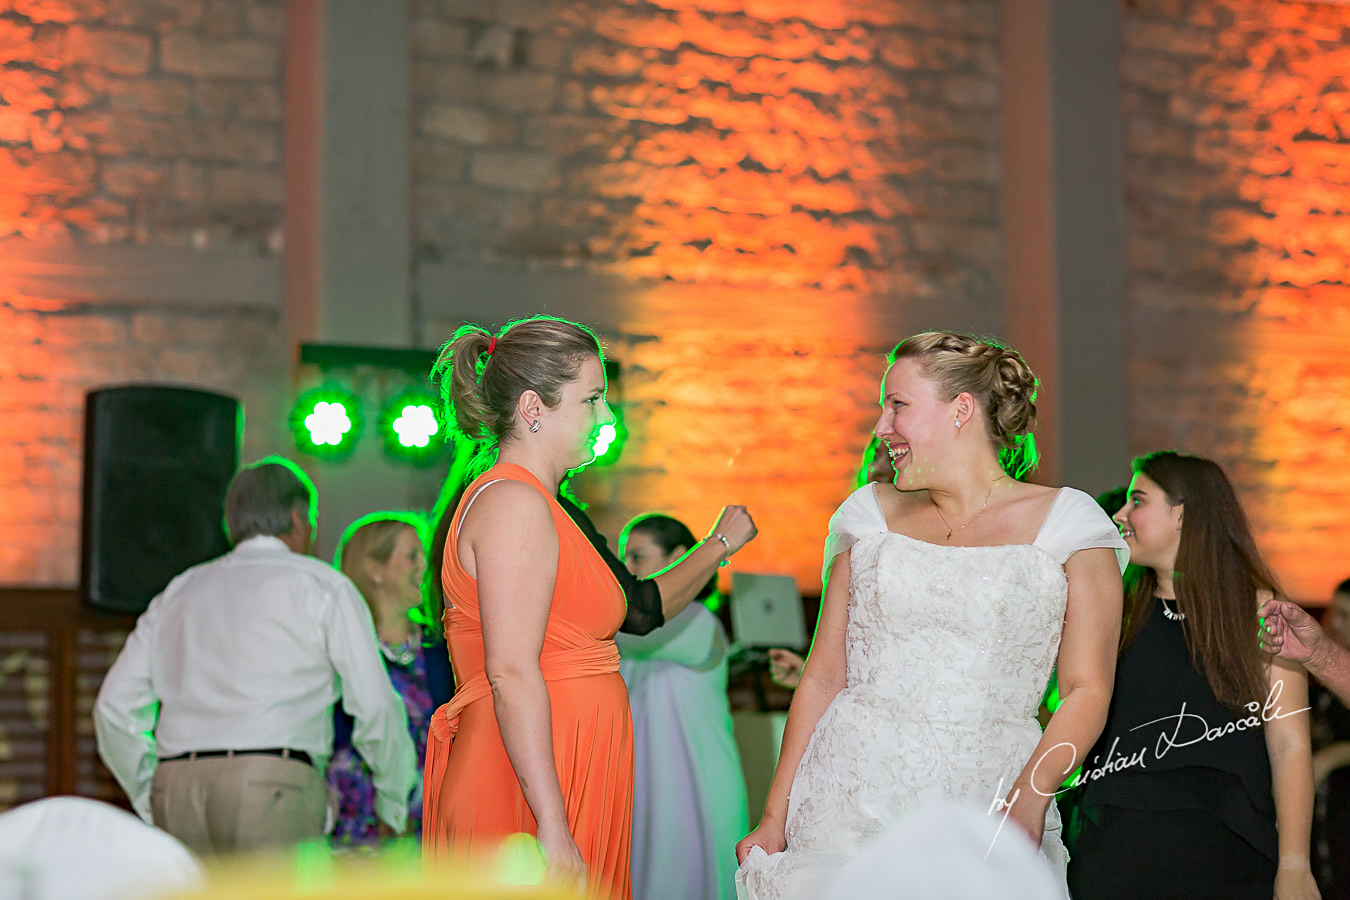 Modern Wedding in Limassol - Natalia & Stephen - 31